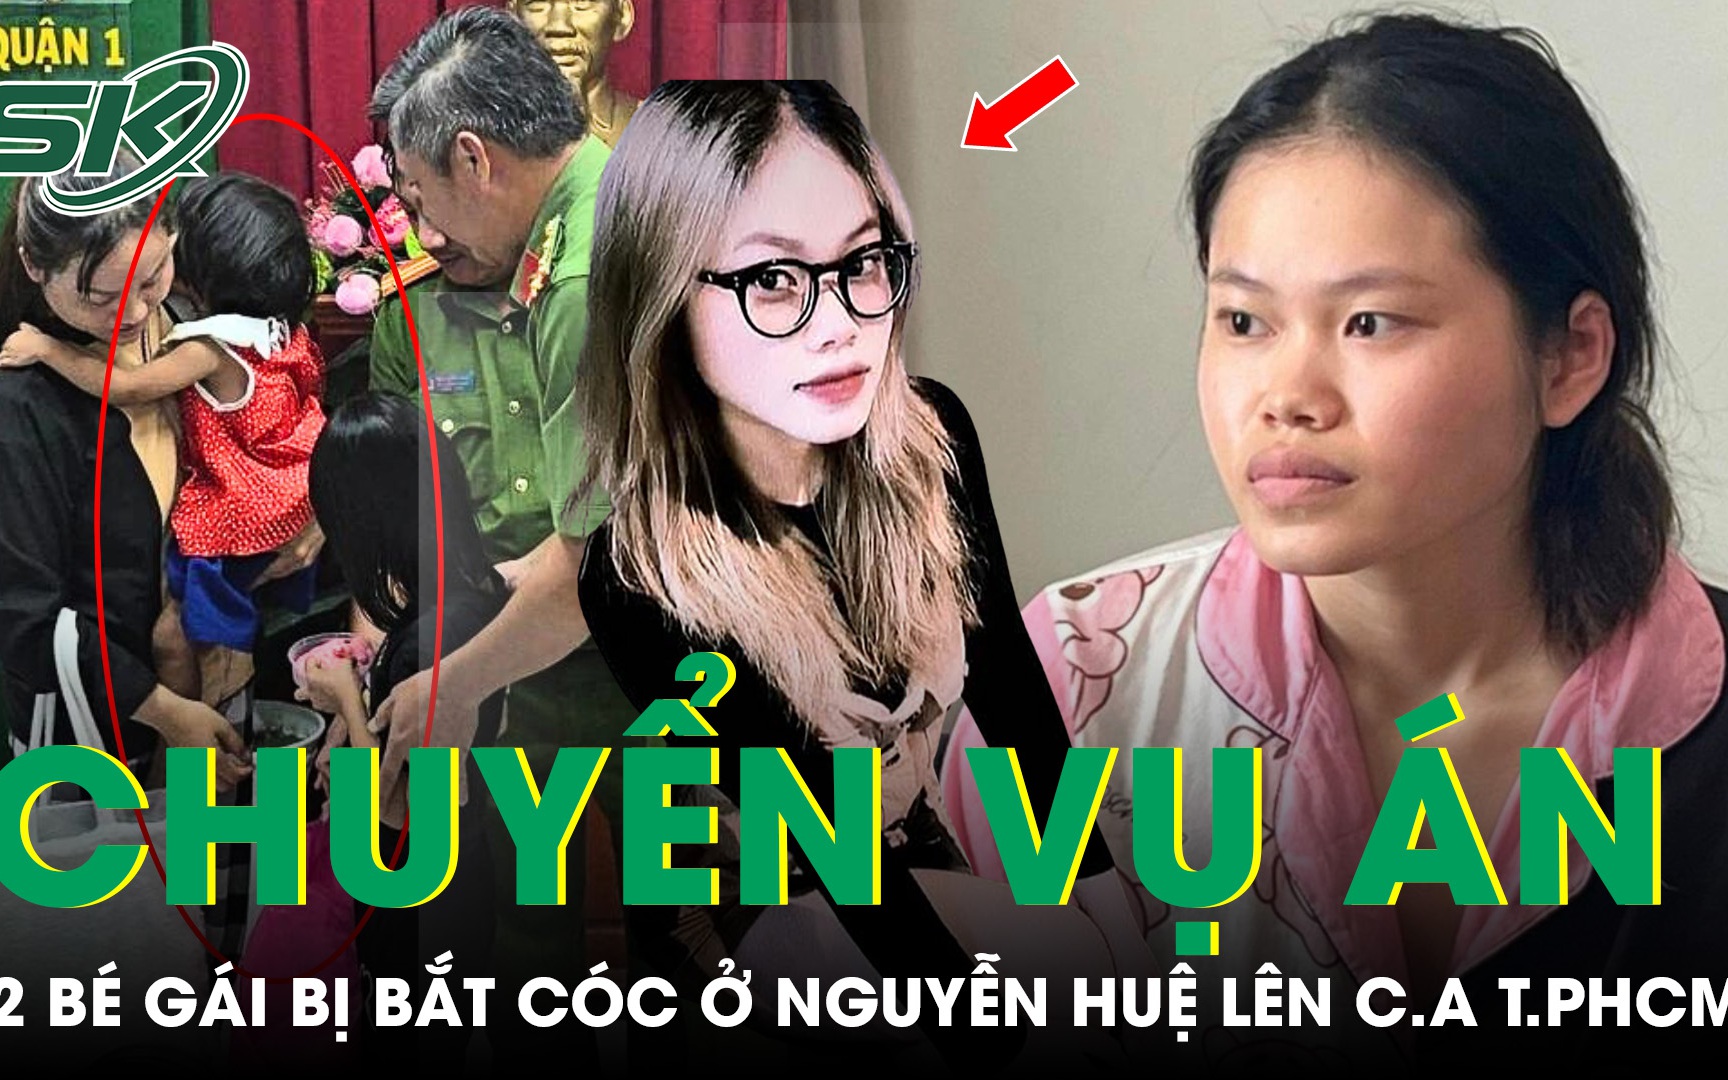 Chuyển vụ án 2 bé gái bị bắt cóc ở phố đi bộ Nguyễn Huệ lên Công an TPHCM